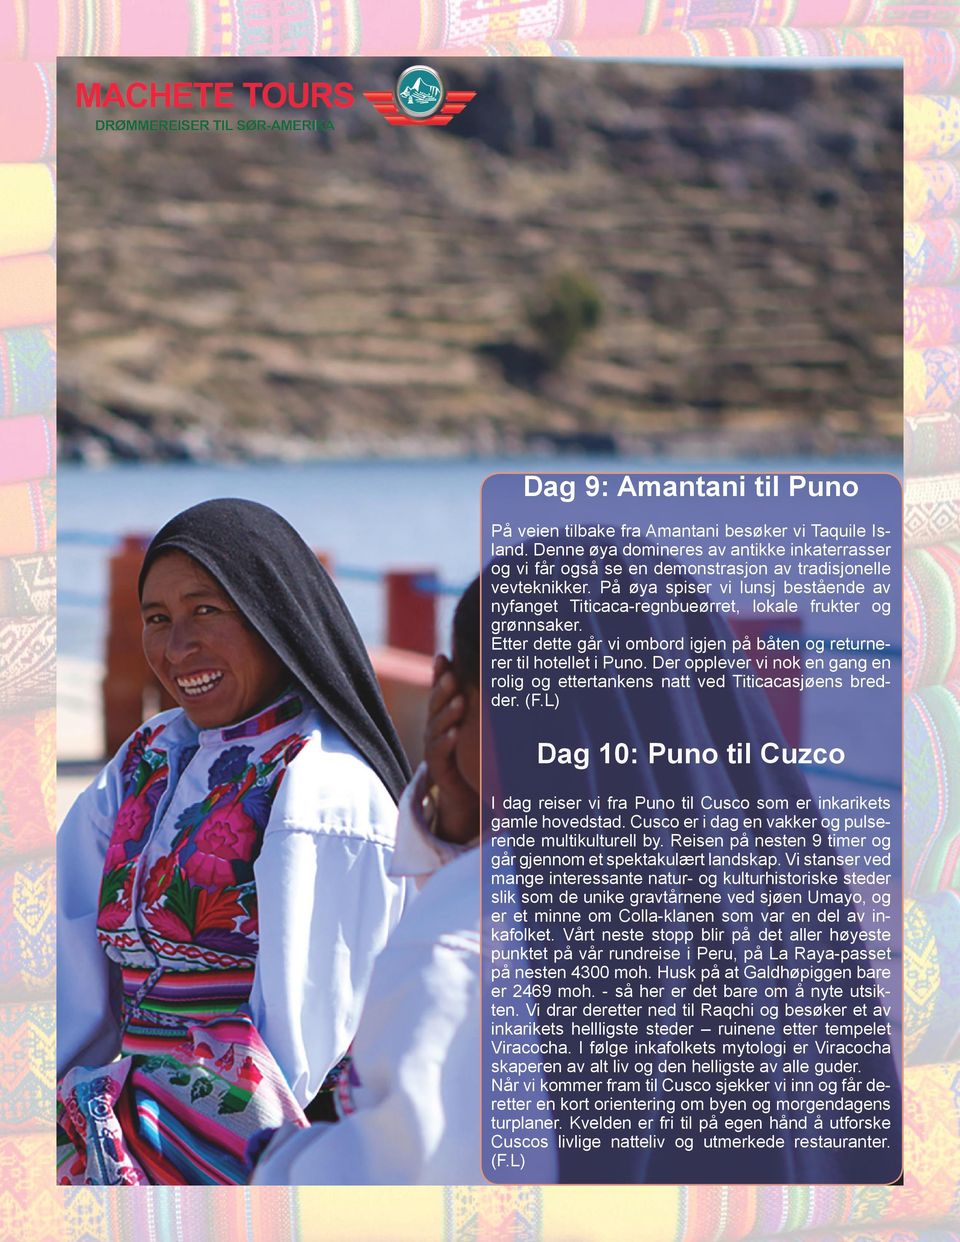 Der opplever vi nok en gang en rolig og ettertankens natt ved Titicacasjøens bredder. (F.L) Dag 10: Puno til Cuzco I dag reiser vi fra Puno til Cusco som er inkarikets gamle hovedstad.